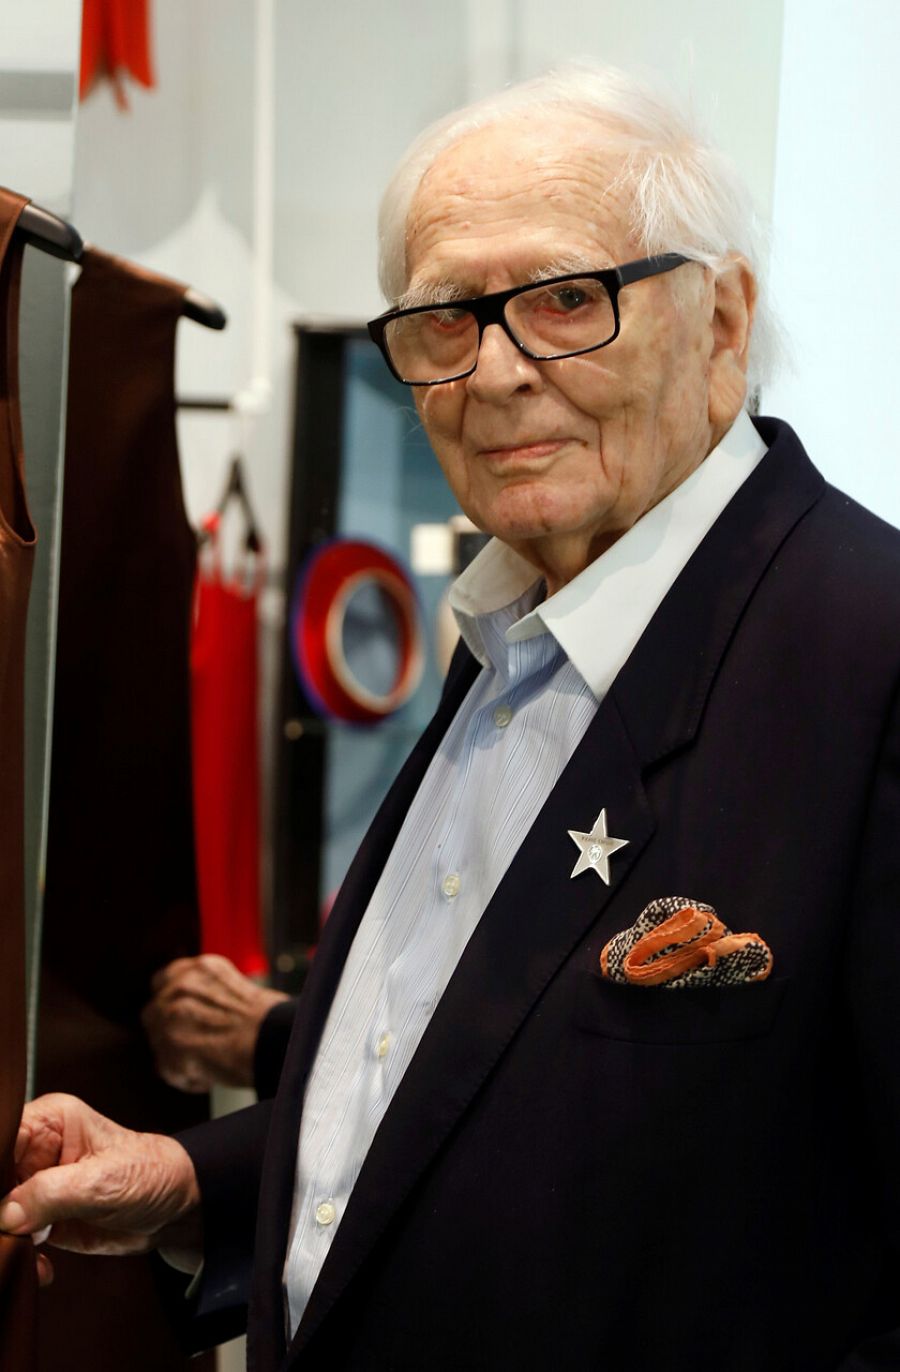 El diseñador Pierre Cardin fallece a los 98 años